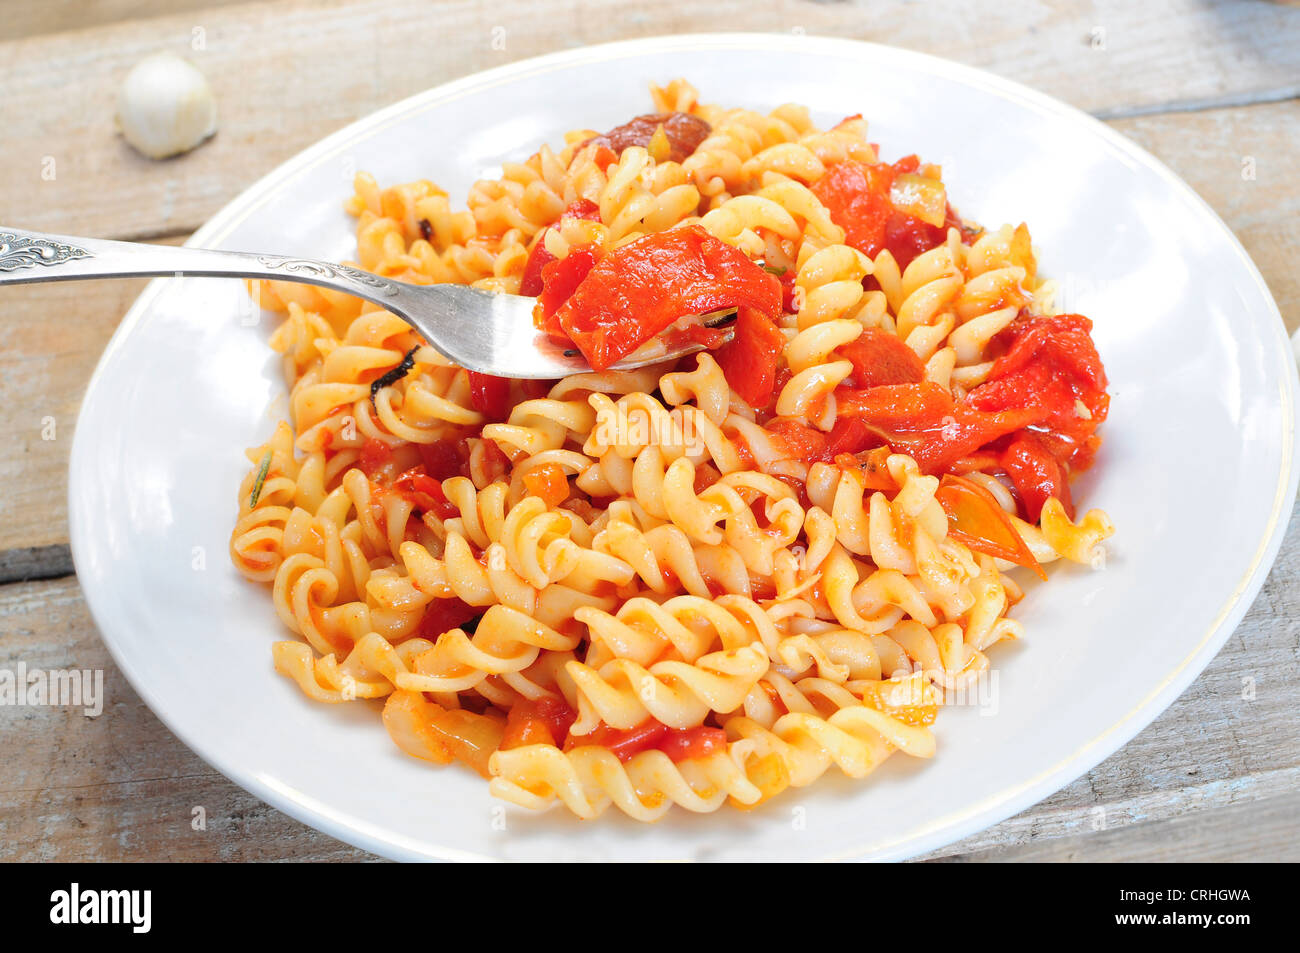 Nudelgericht - Fusili mit Tomaten-Paprika-Sauce gekocht Stockfoto